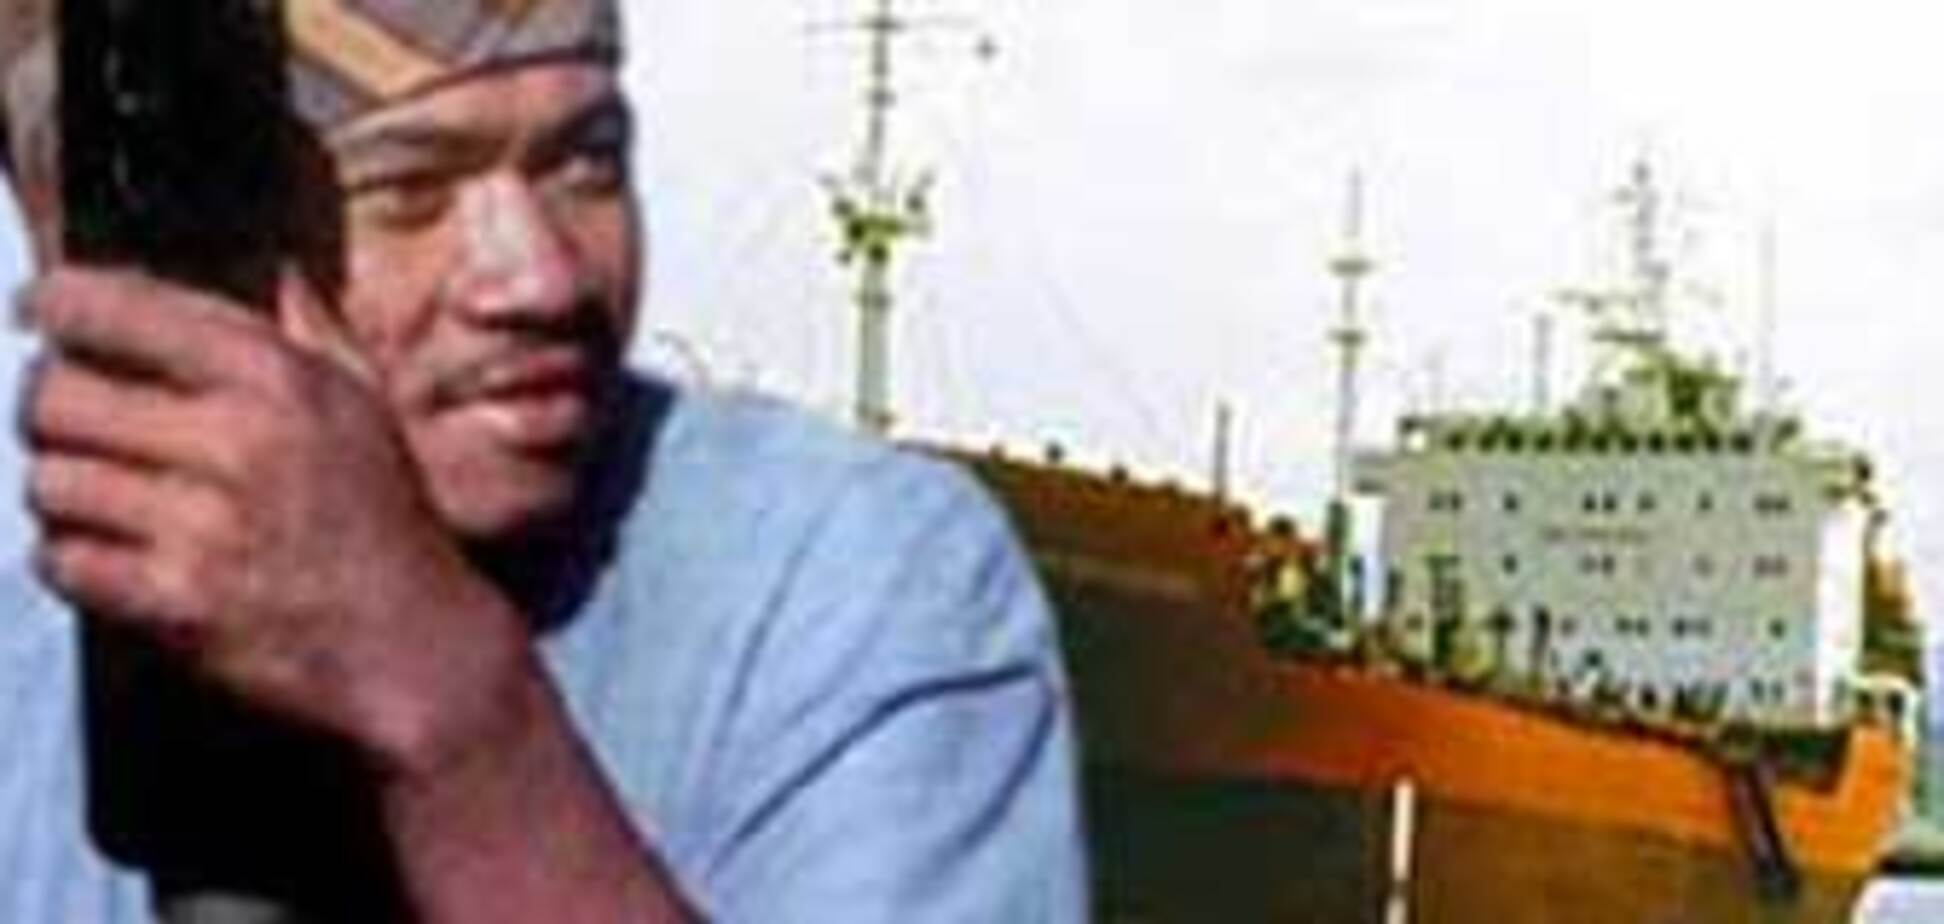 Сомалийские пираты захватили судно с россиянами, 27 мая 2008